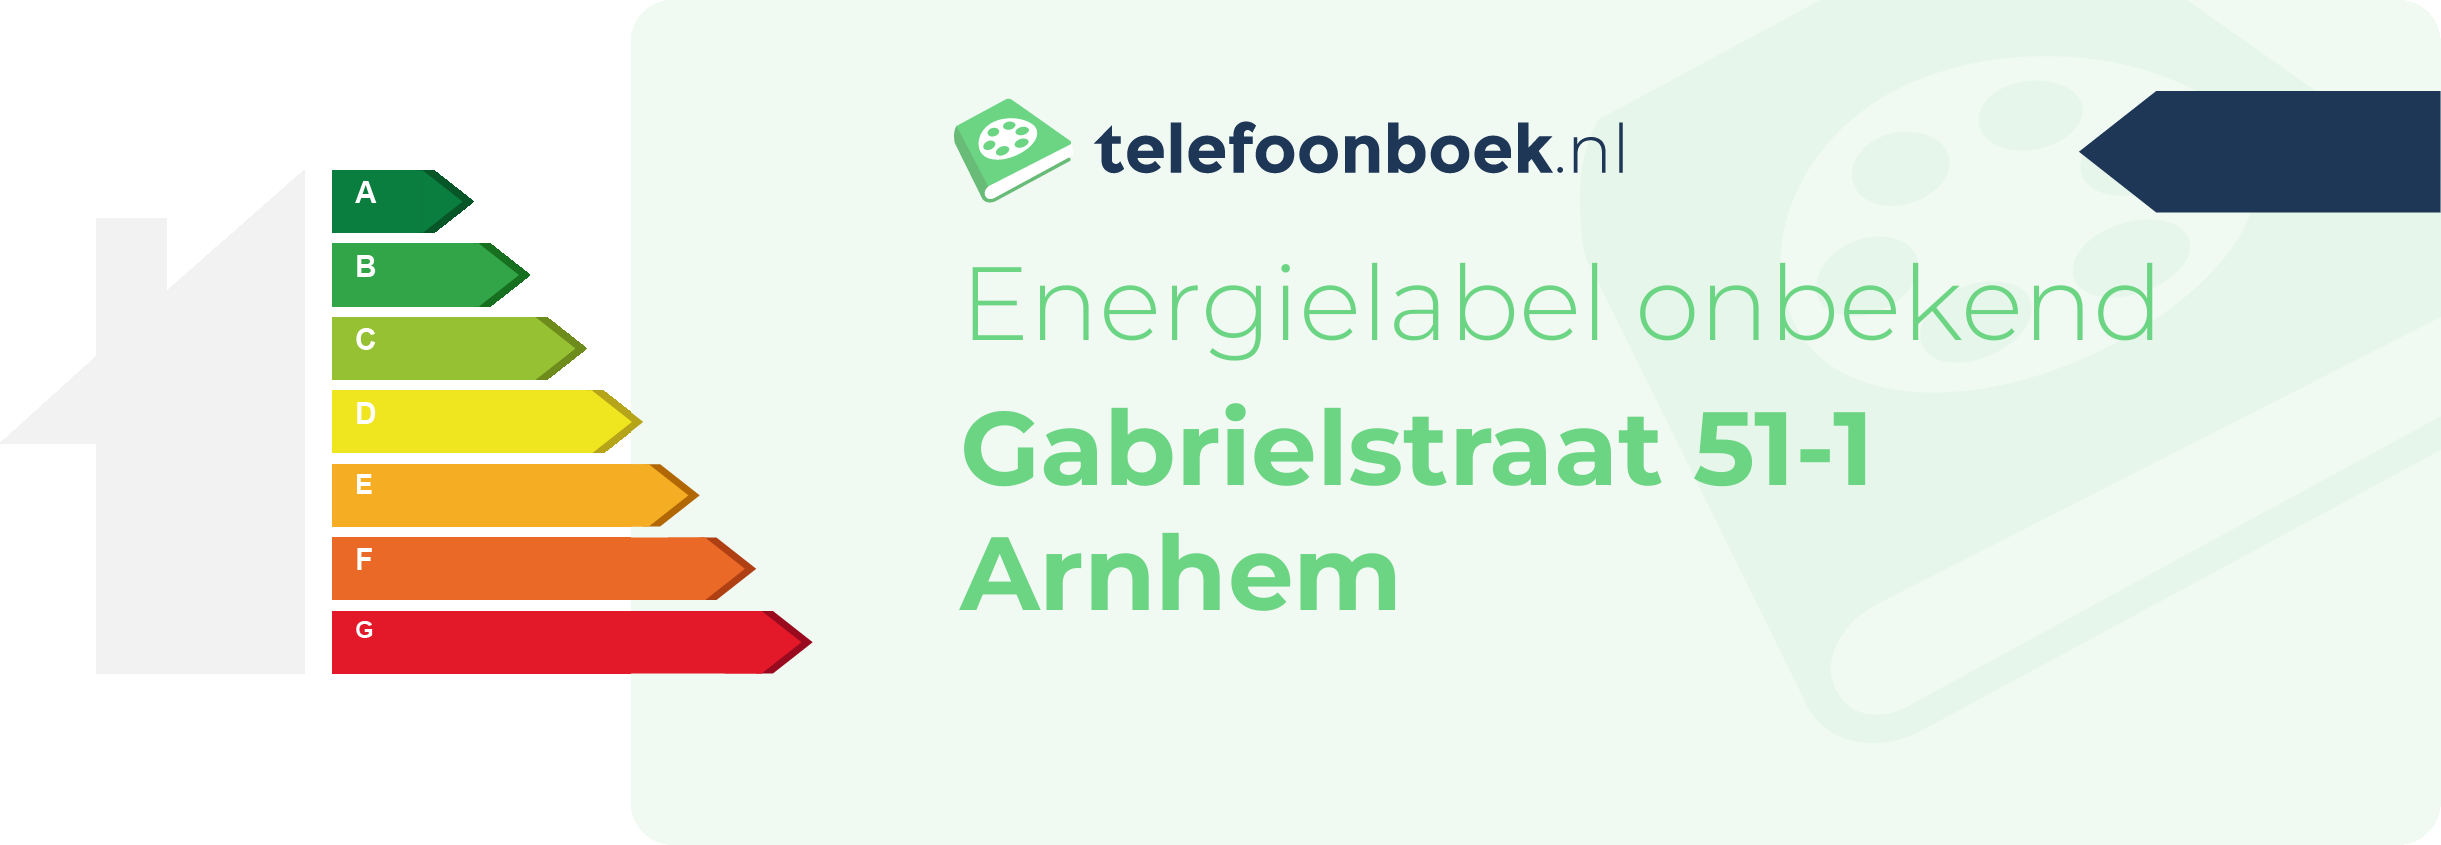 Energielabel Gabrielstraat 51-1 Arnhem